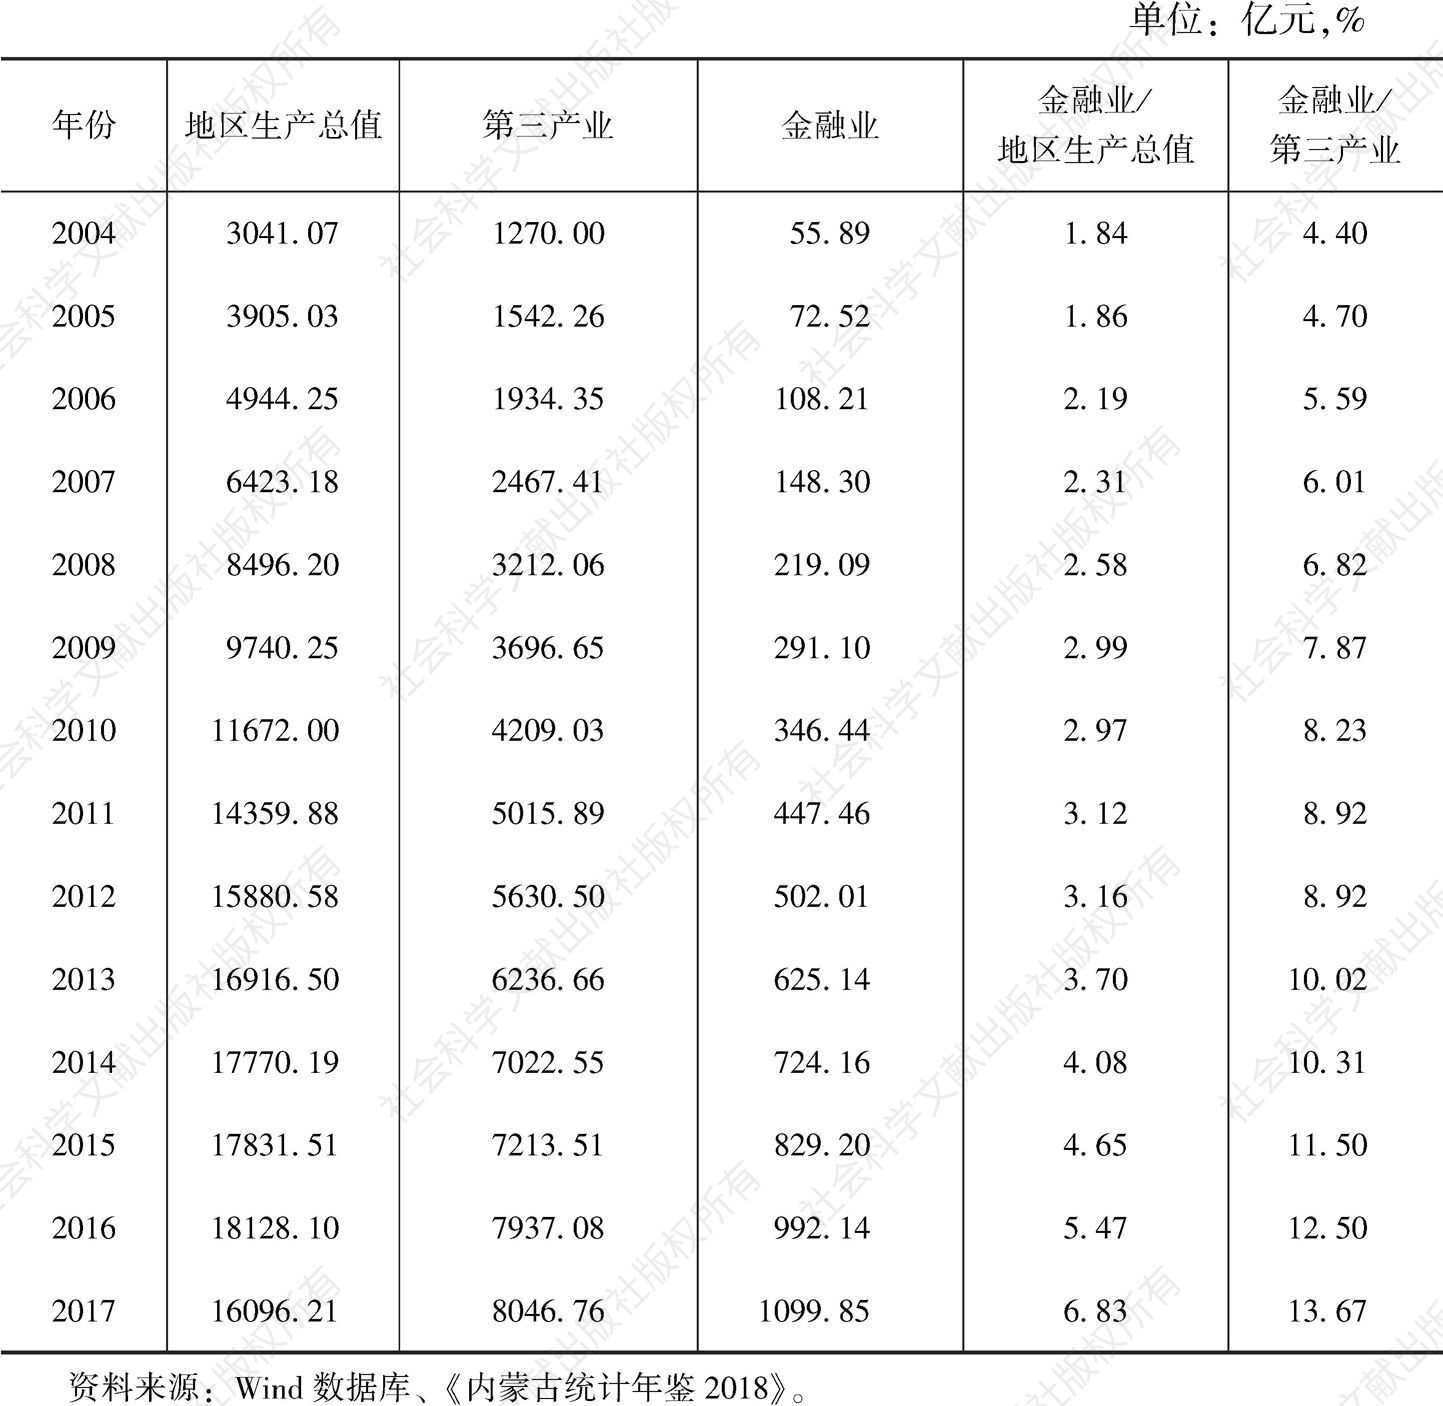 表7-10 2004～2017年内蒙古自治区地区生产总值、第三产业、金融业比较